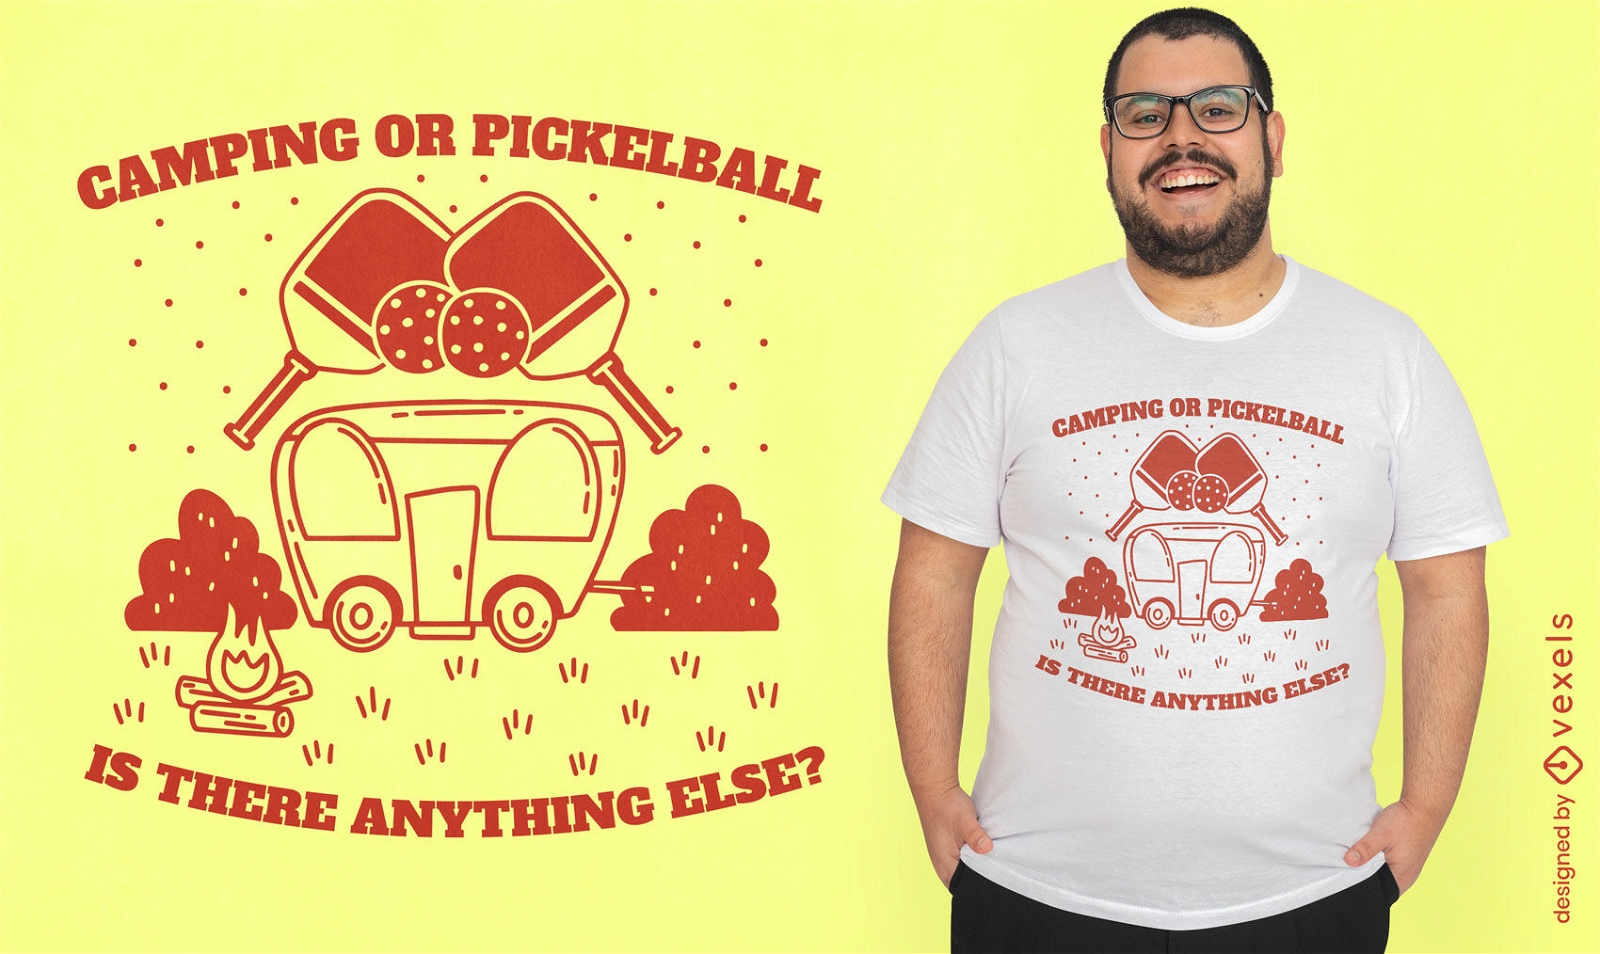 Dise?o de camiseta de pickleball y rv truck.